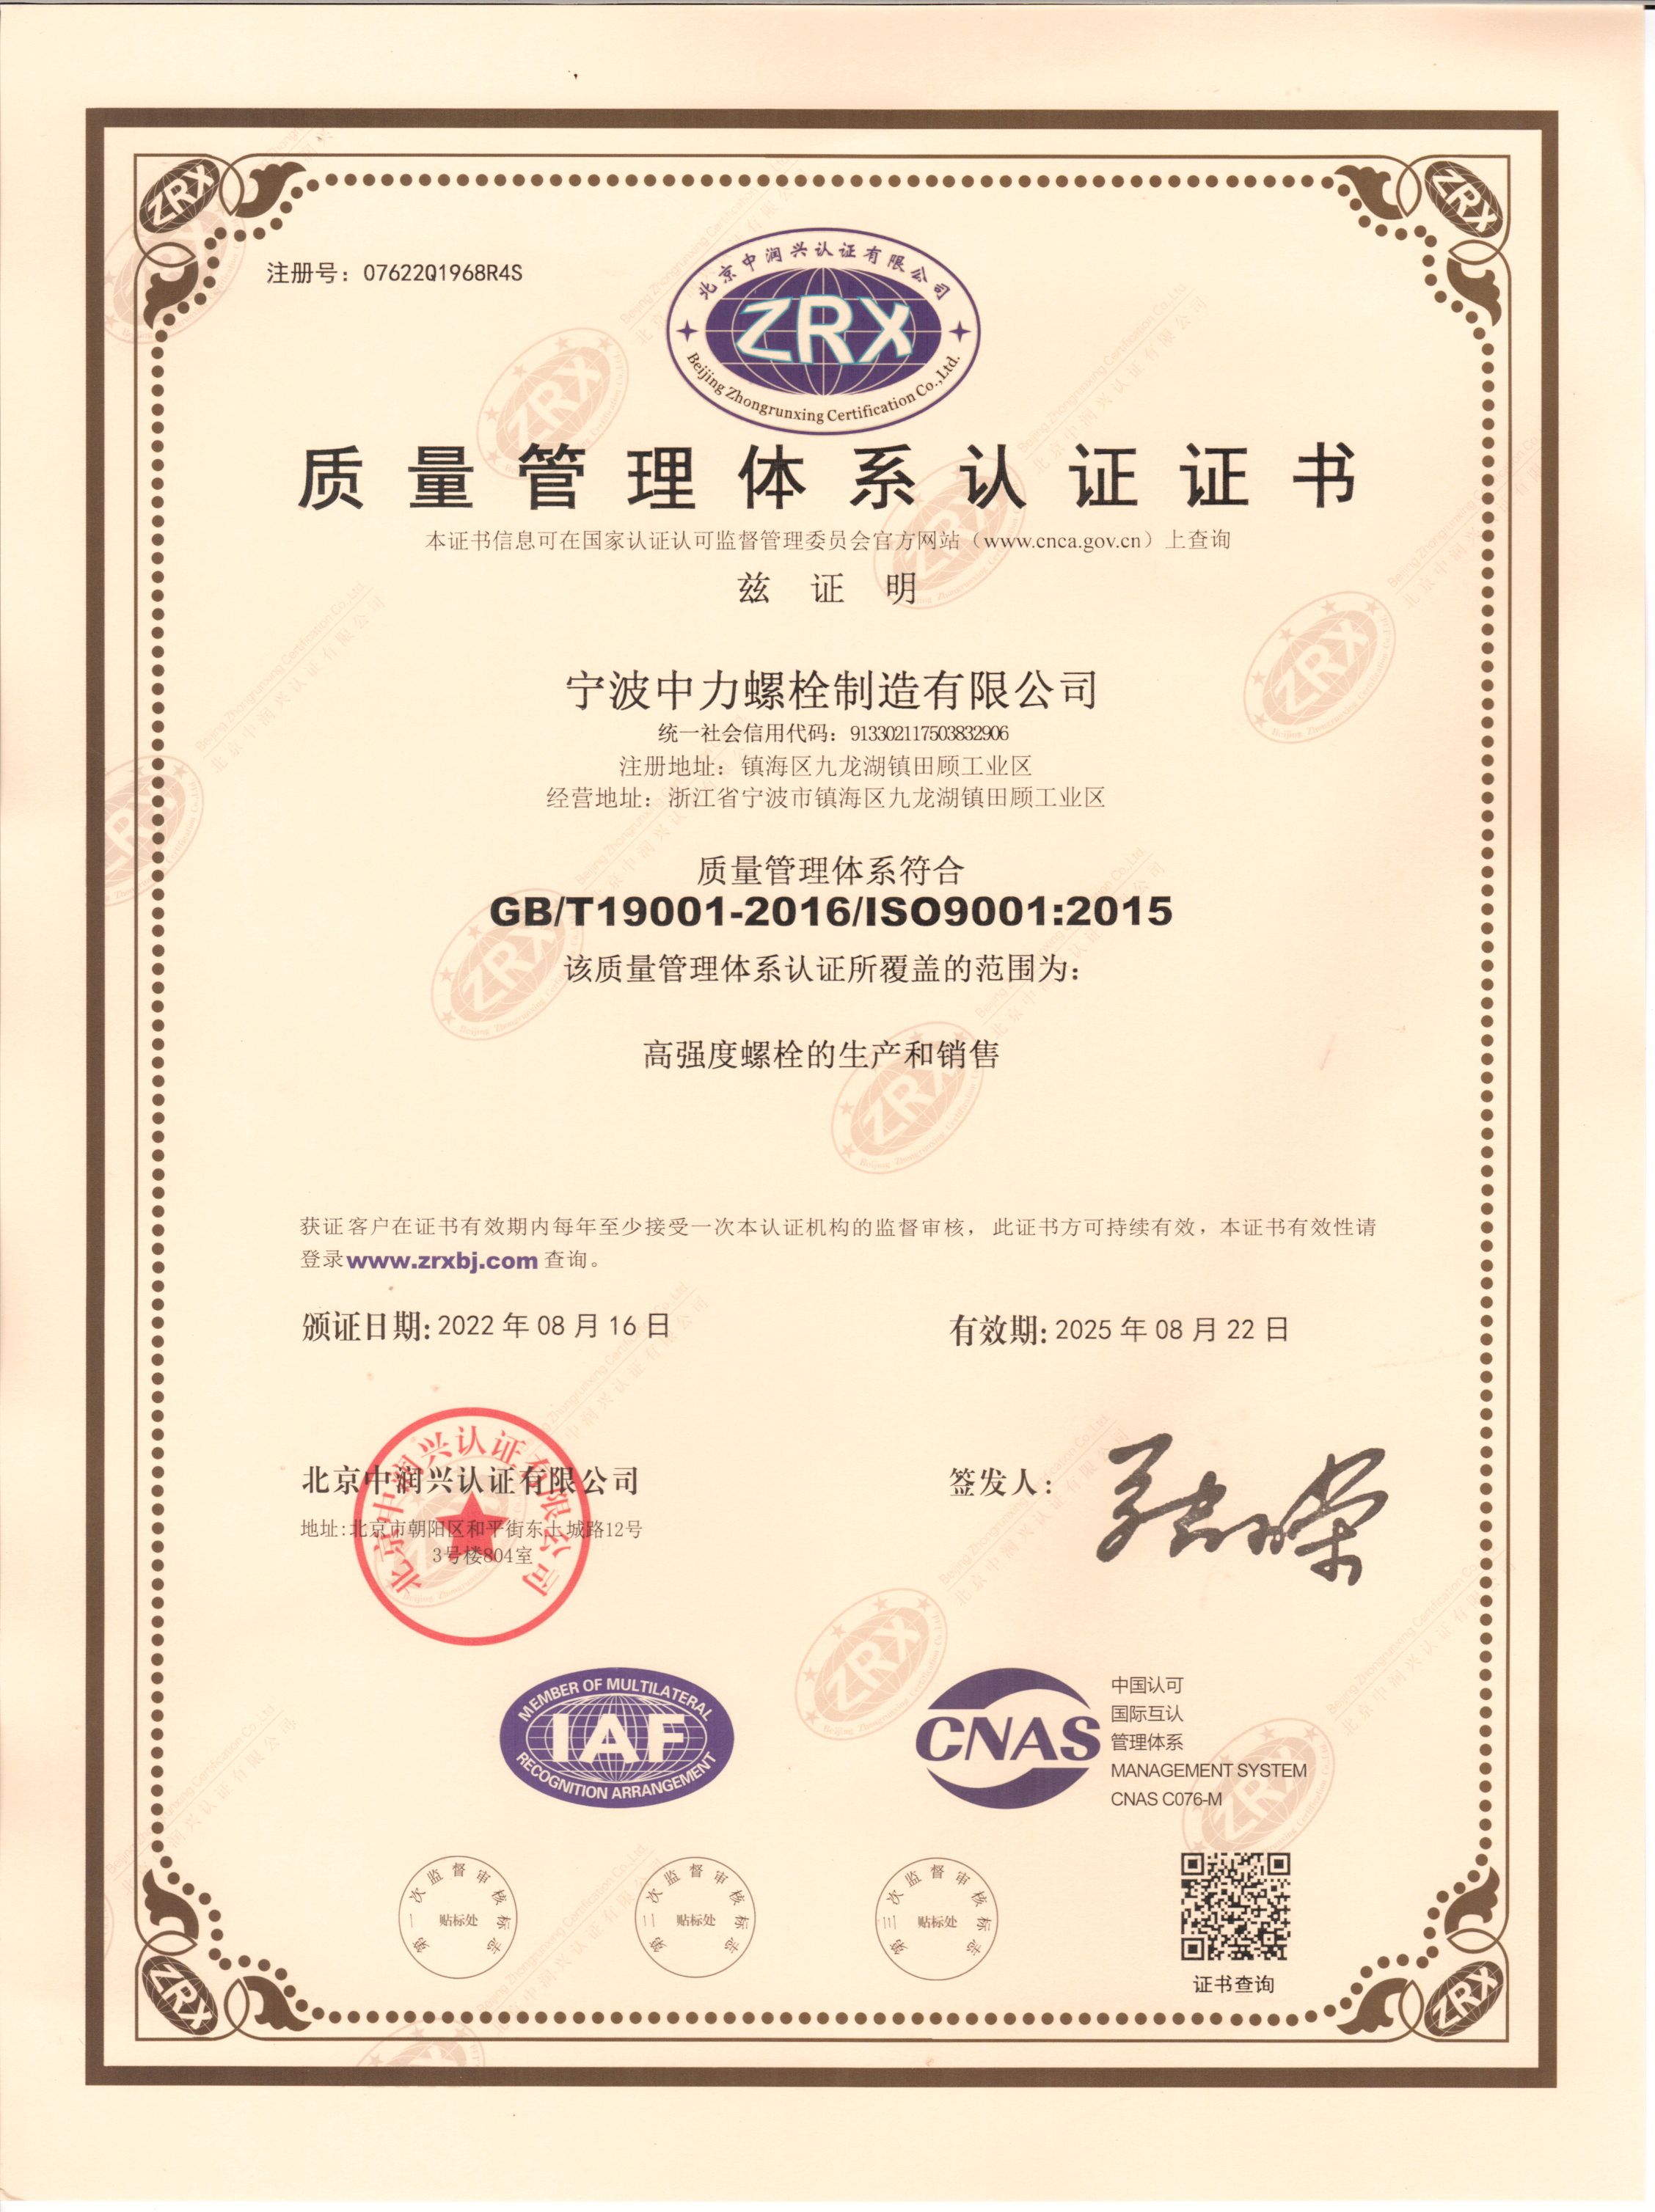 Ningbo Zhongli ISO certificate 